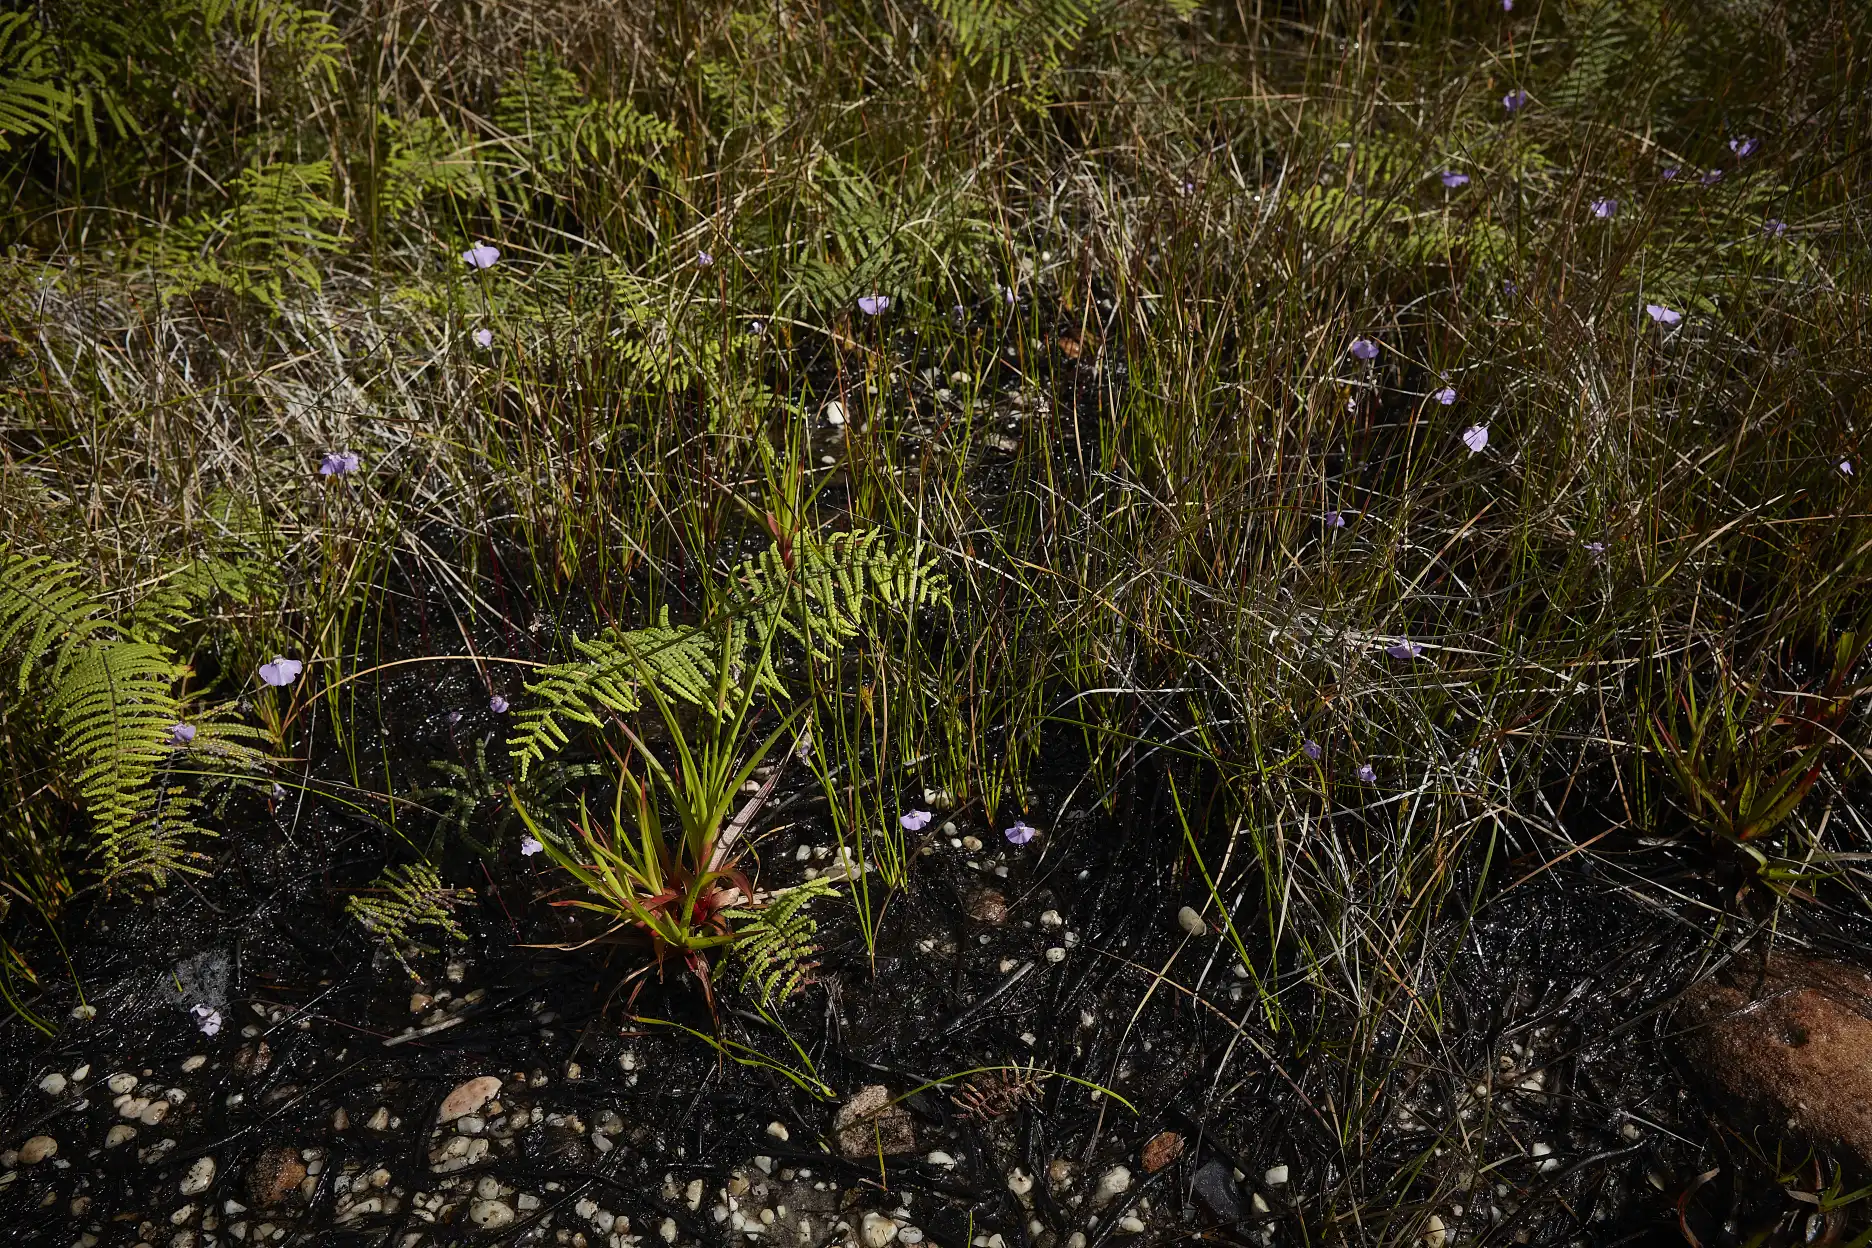 Utricularia uniflora habitat at North Head